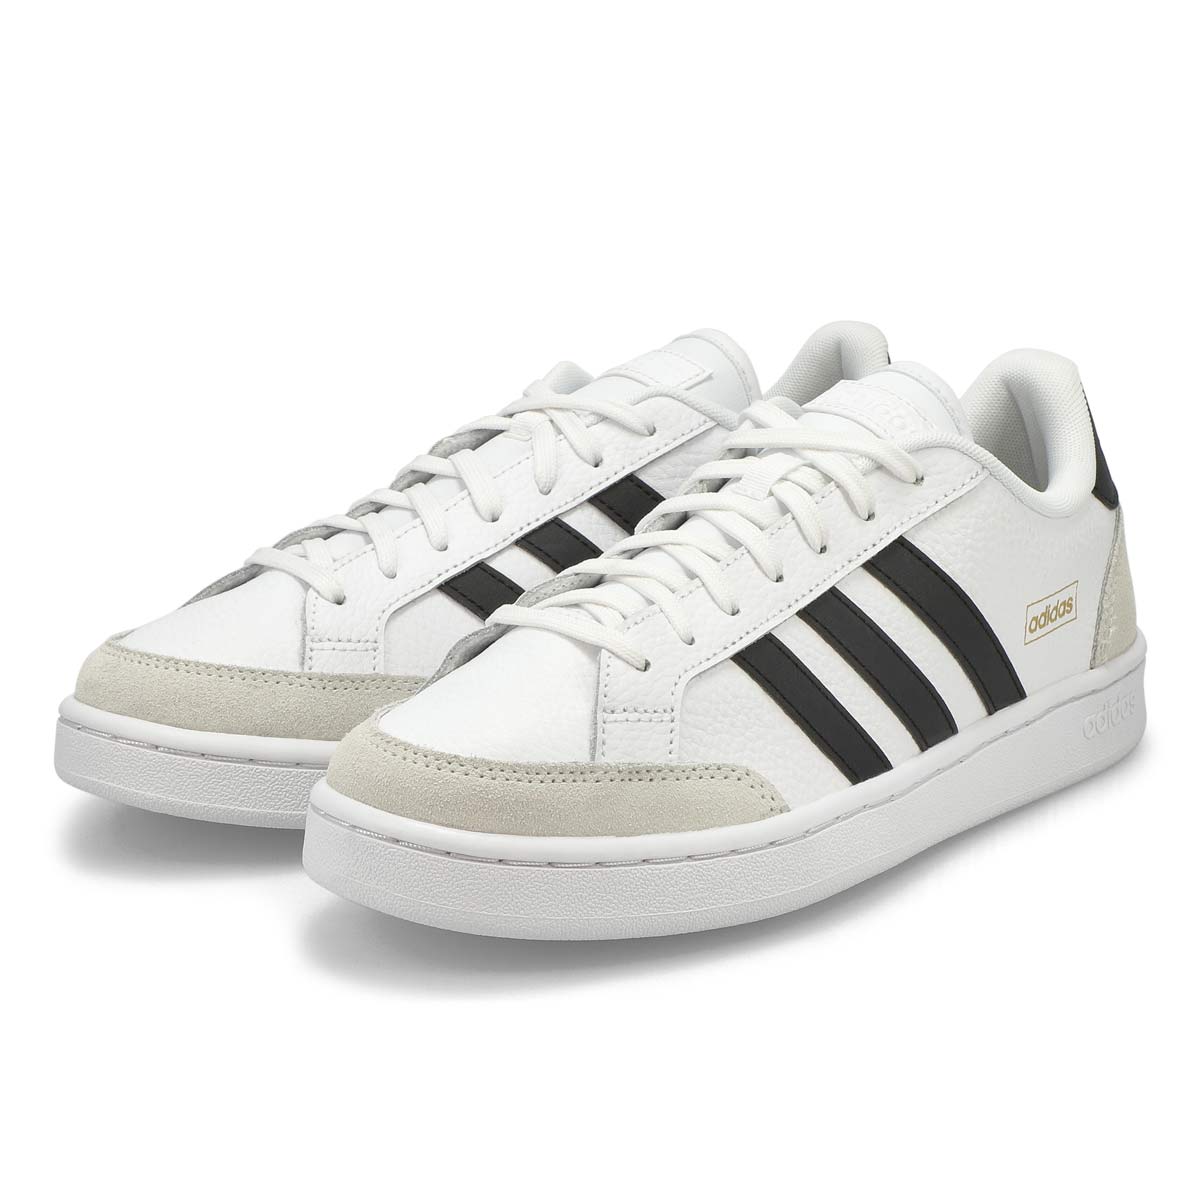 افضل مكانس كهربائية Men's Grand Court SE Sneaker - White/Black افضل مكانس كهربائية